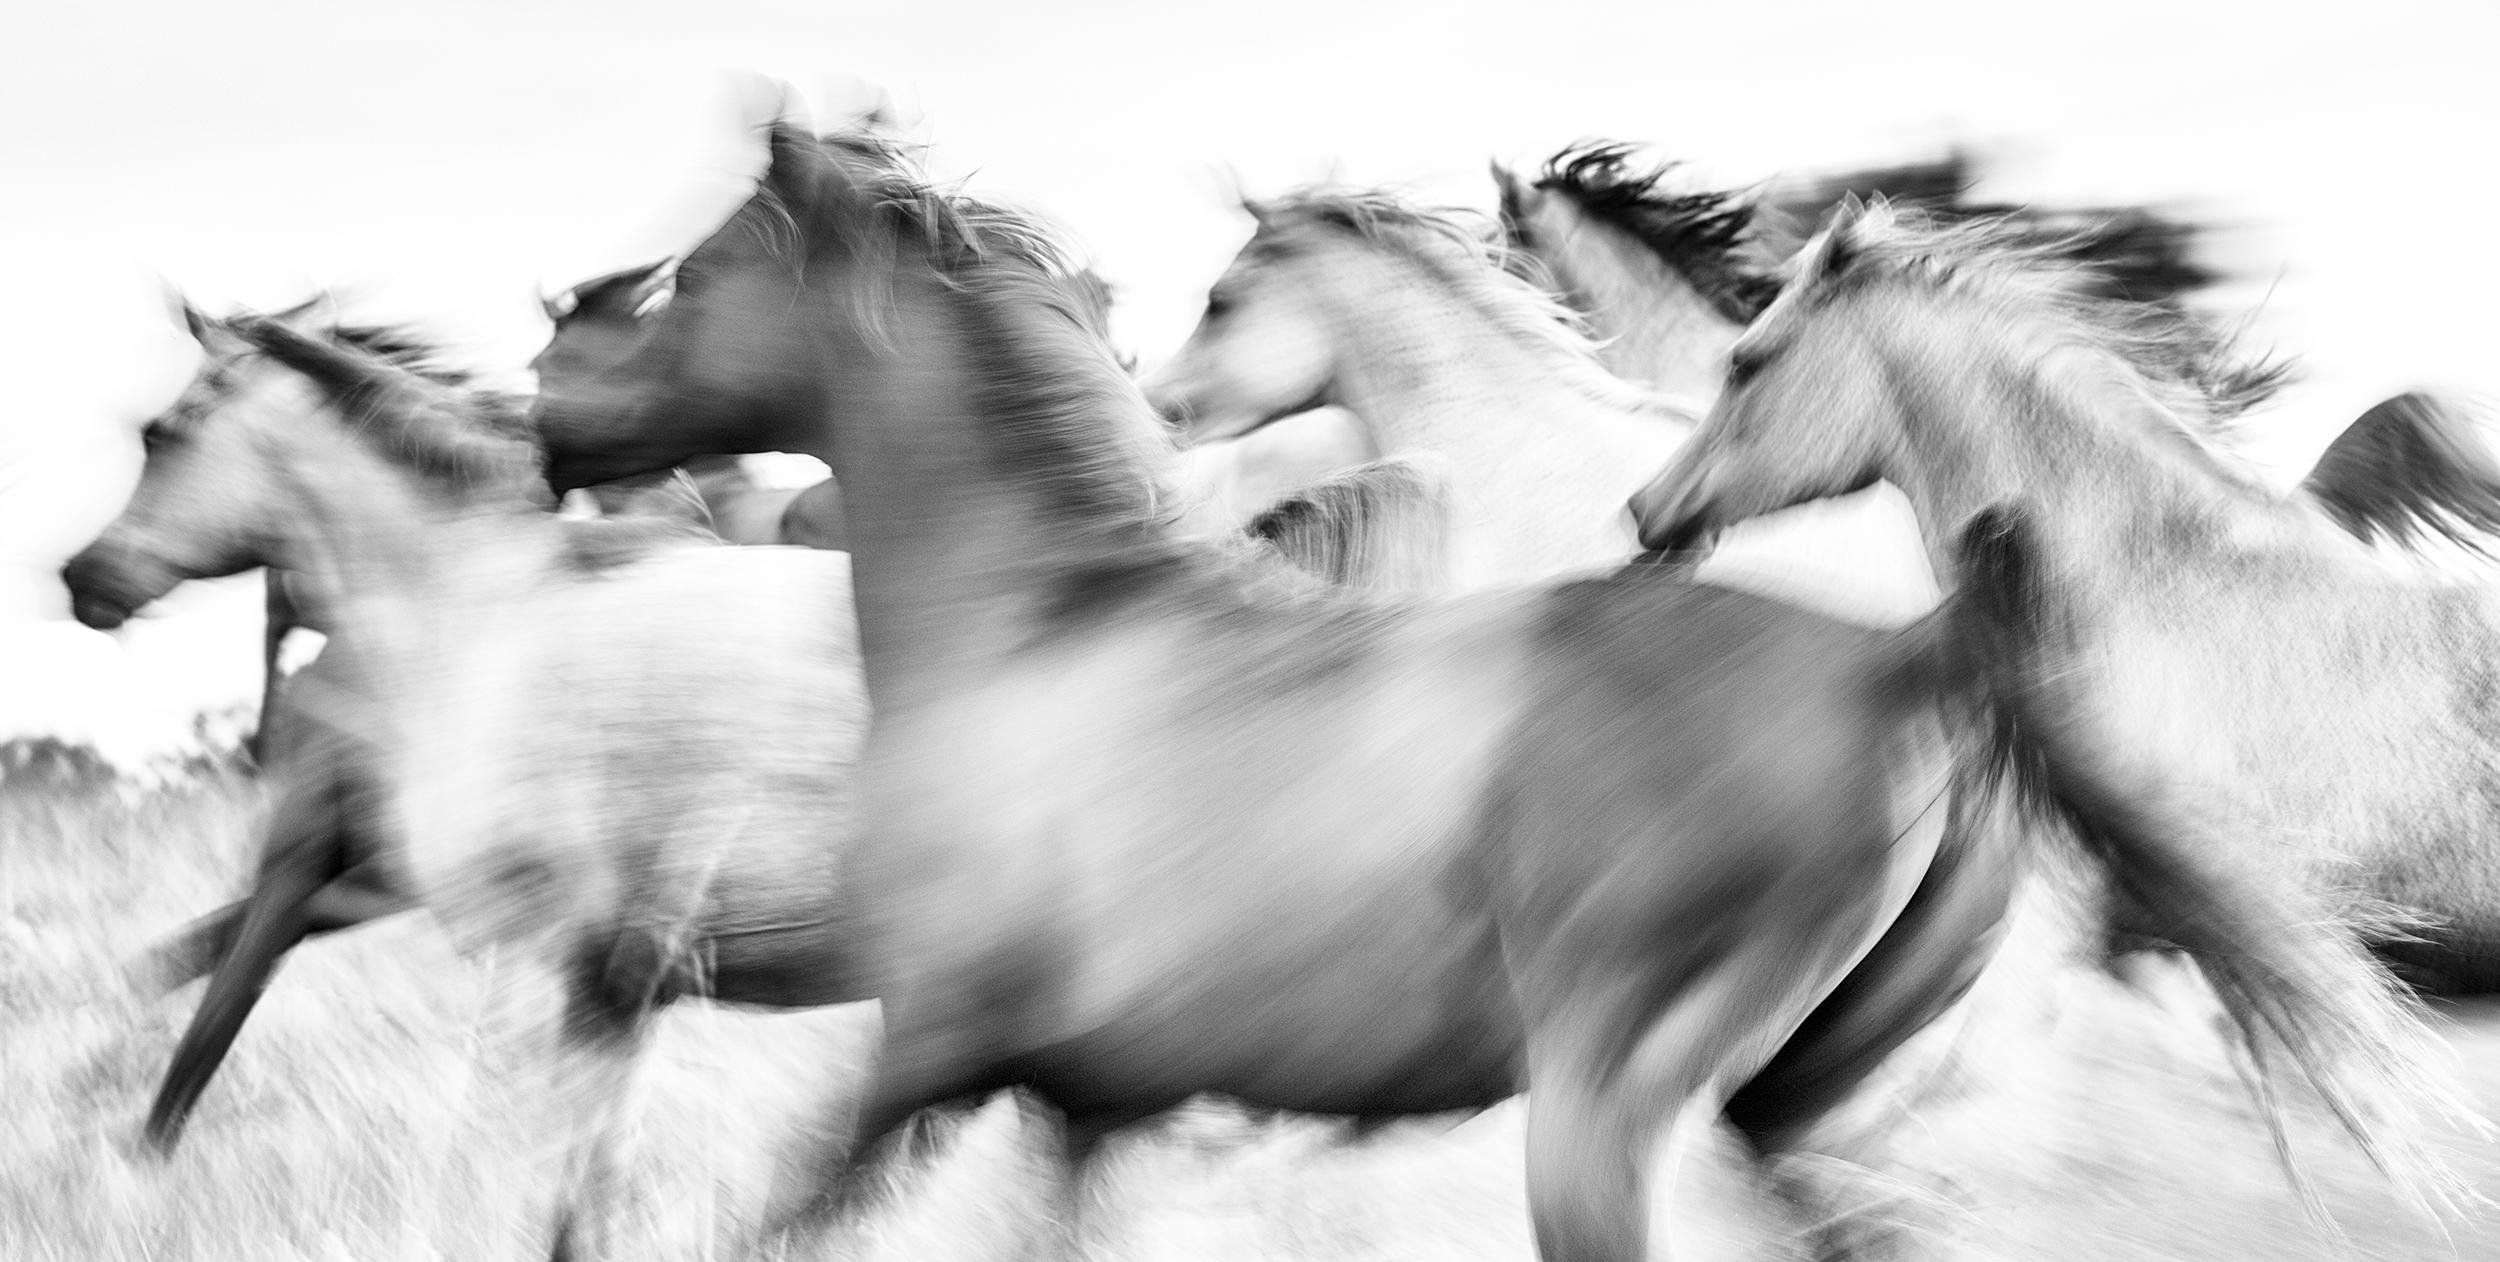 Impression pigmentaire d'archives sous verre acrylique
Edition de 15

"Les chevaux suscitent la passion, inspirent le respect et ont influencé l'histoire de l'humanité comme aucun autre animal. Ces créatures uniques représentent la force, la fierté